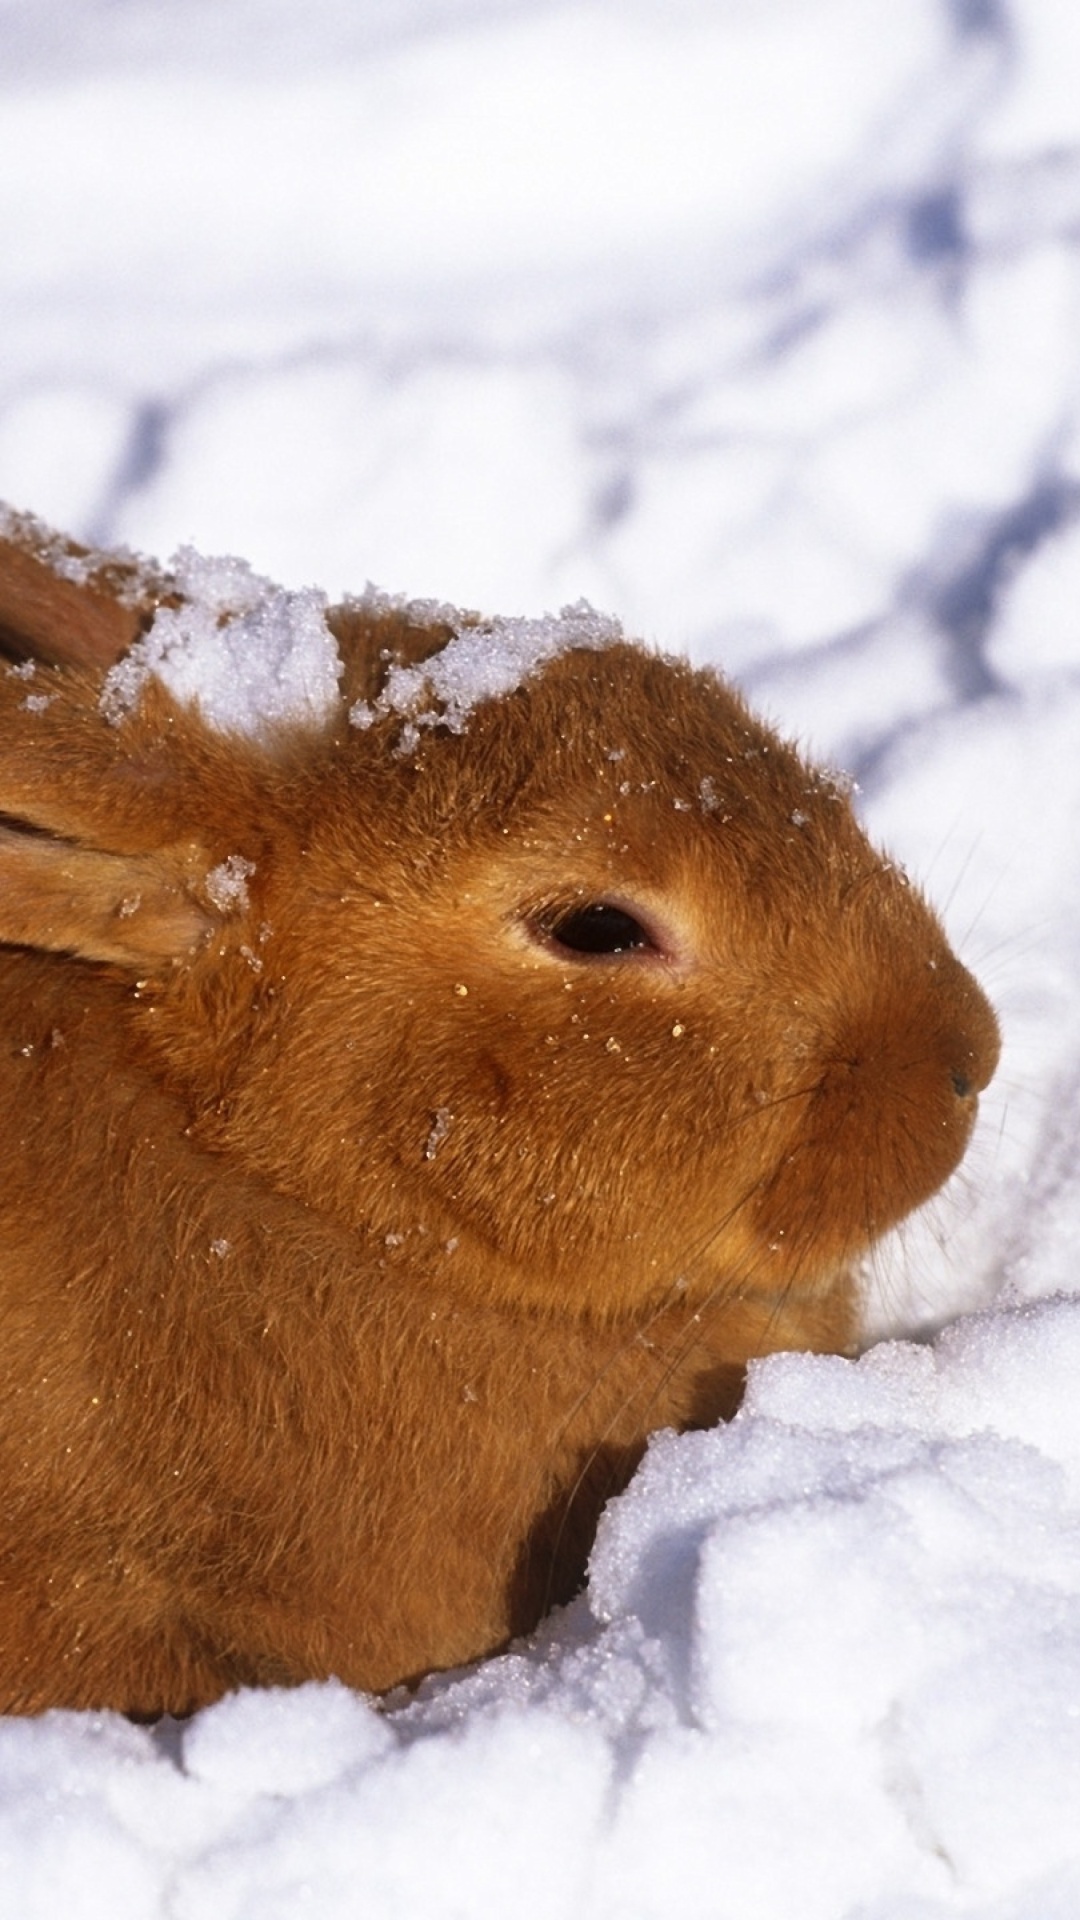 Sfondi Rabbit in Snow 1080x1920